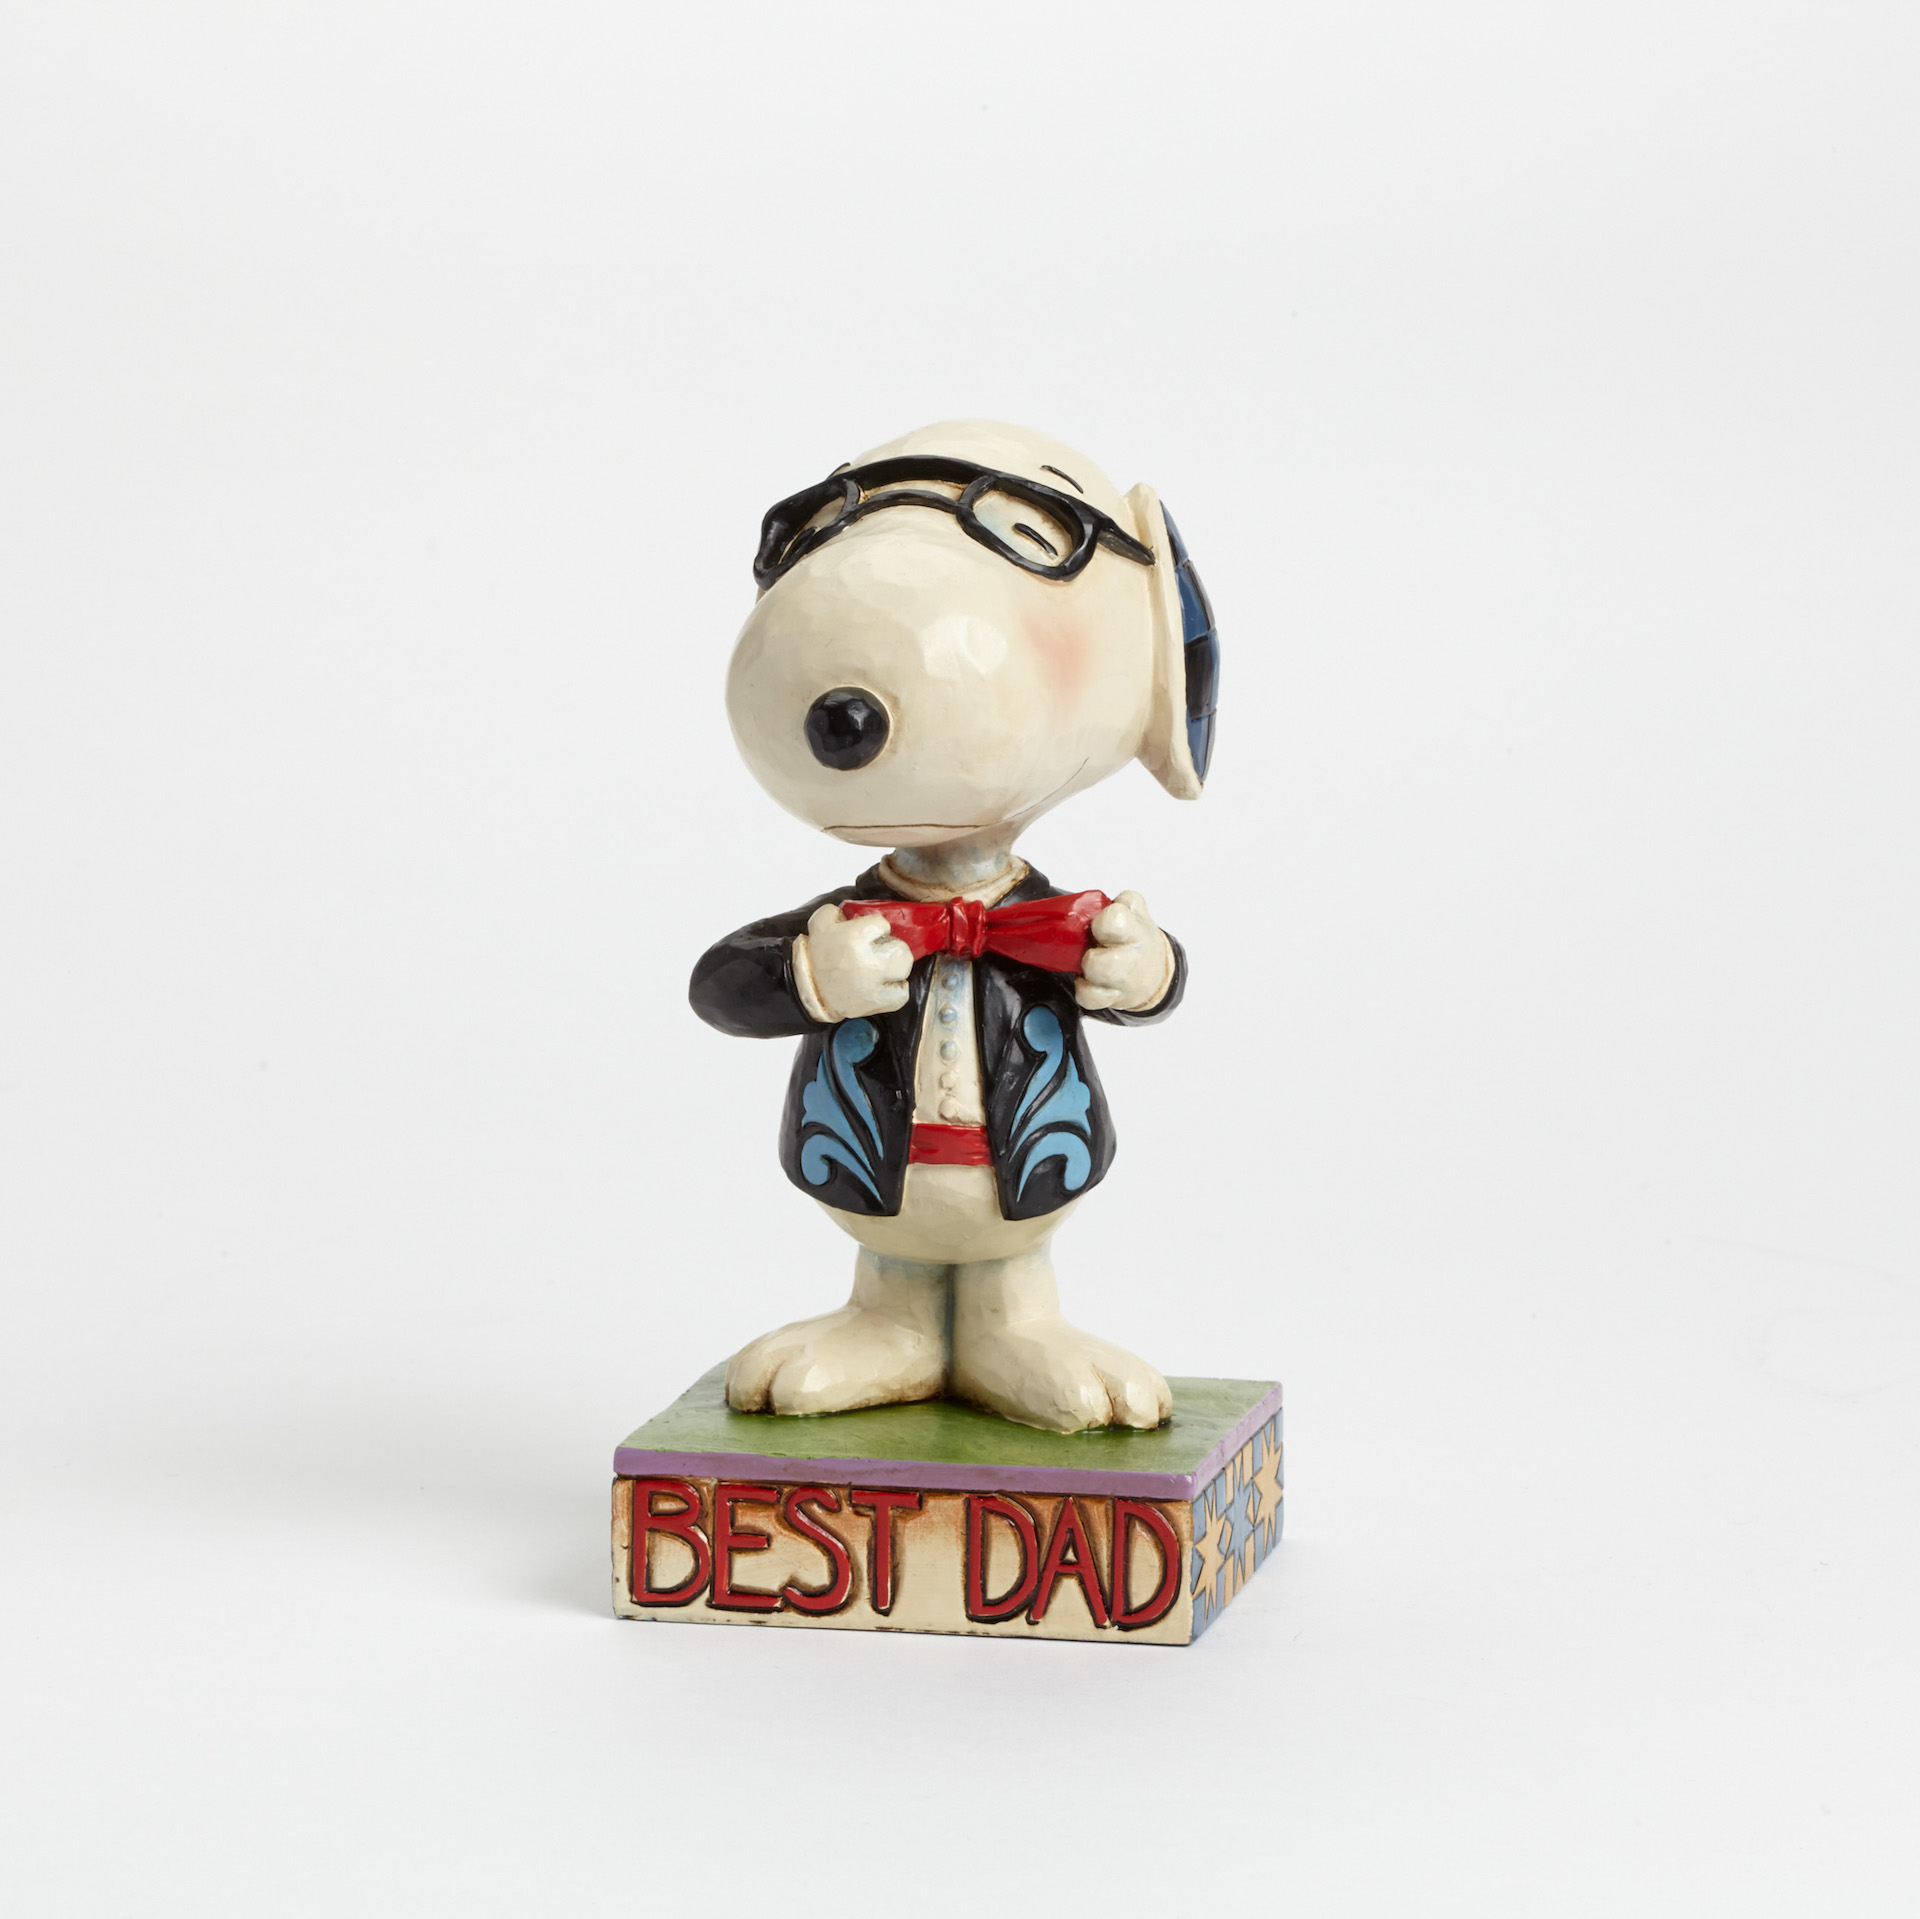 Sammelfigur Snoopy "Best Dad" 